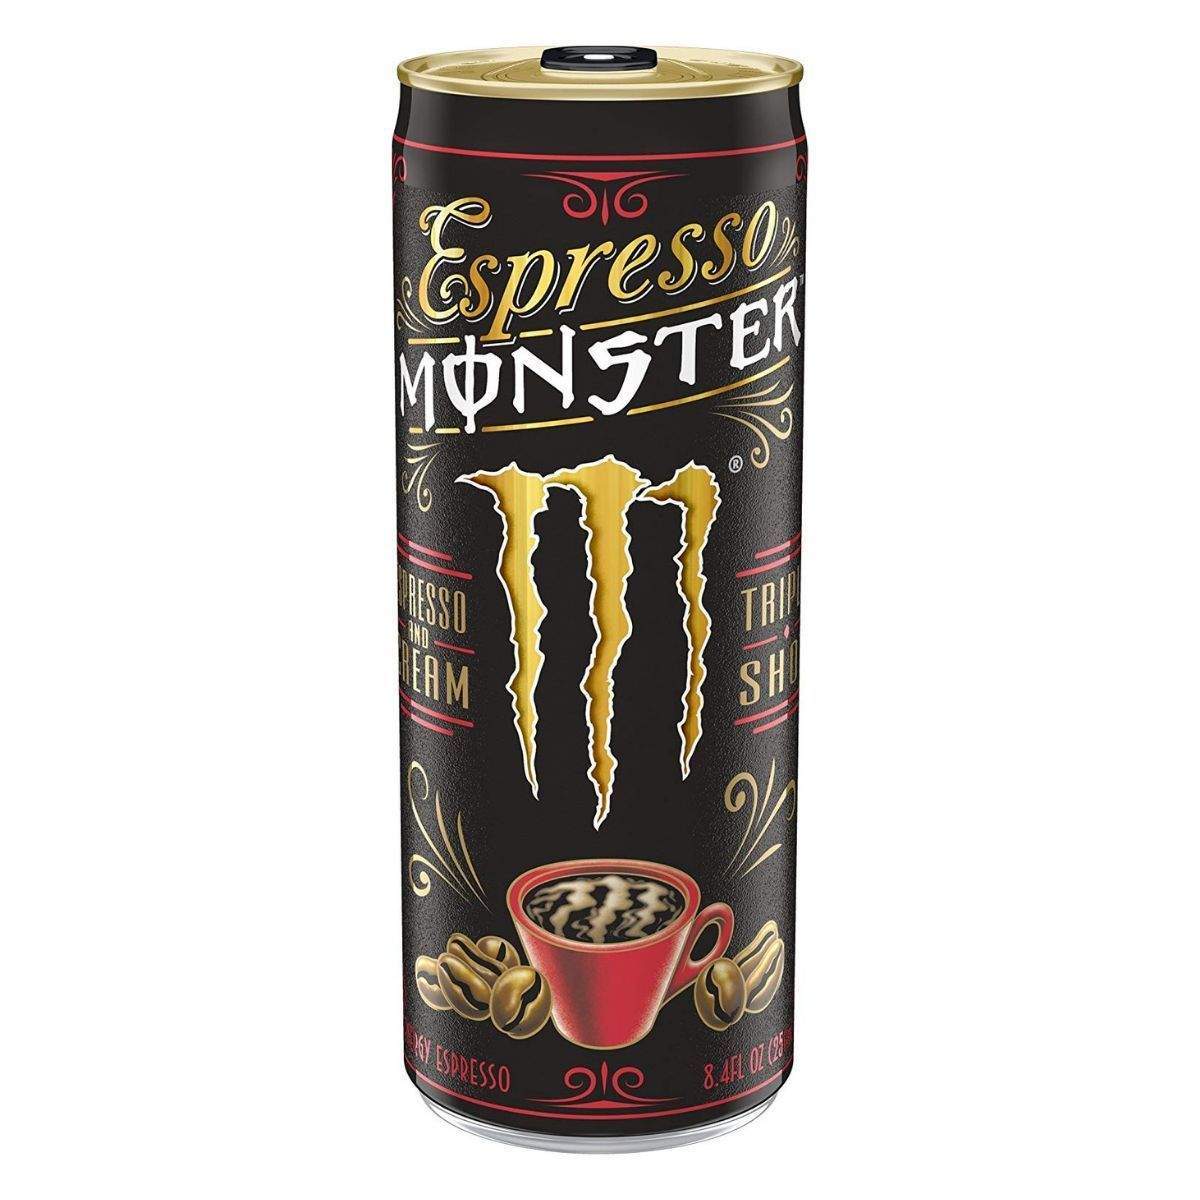 Monster Energy Espresso Milk New Design France sku: 0920 ( ammaccatura parte posteriore ) rare